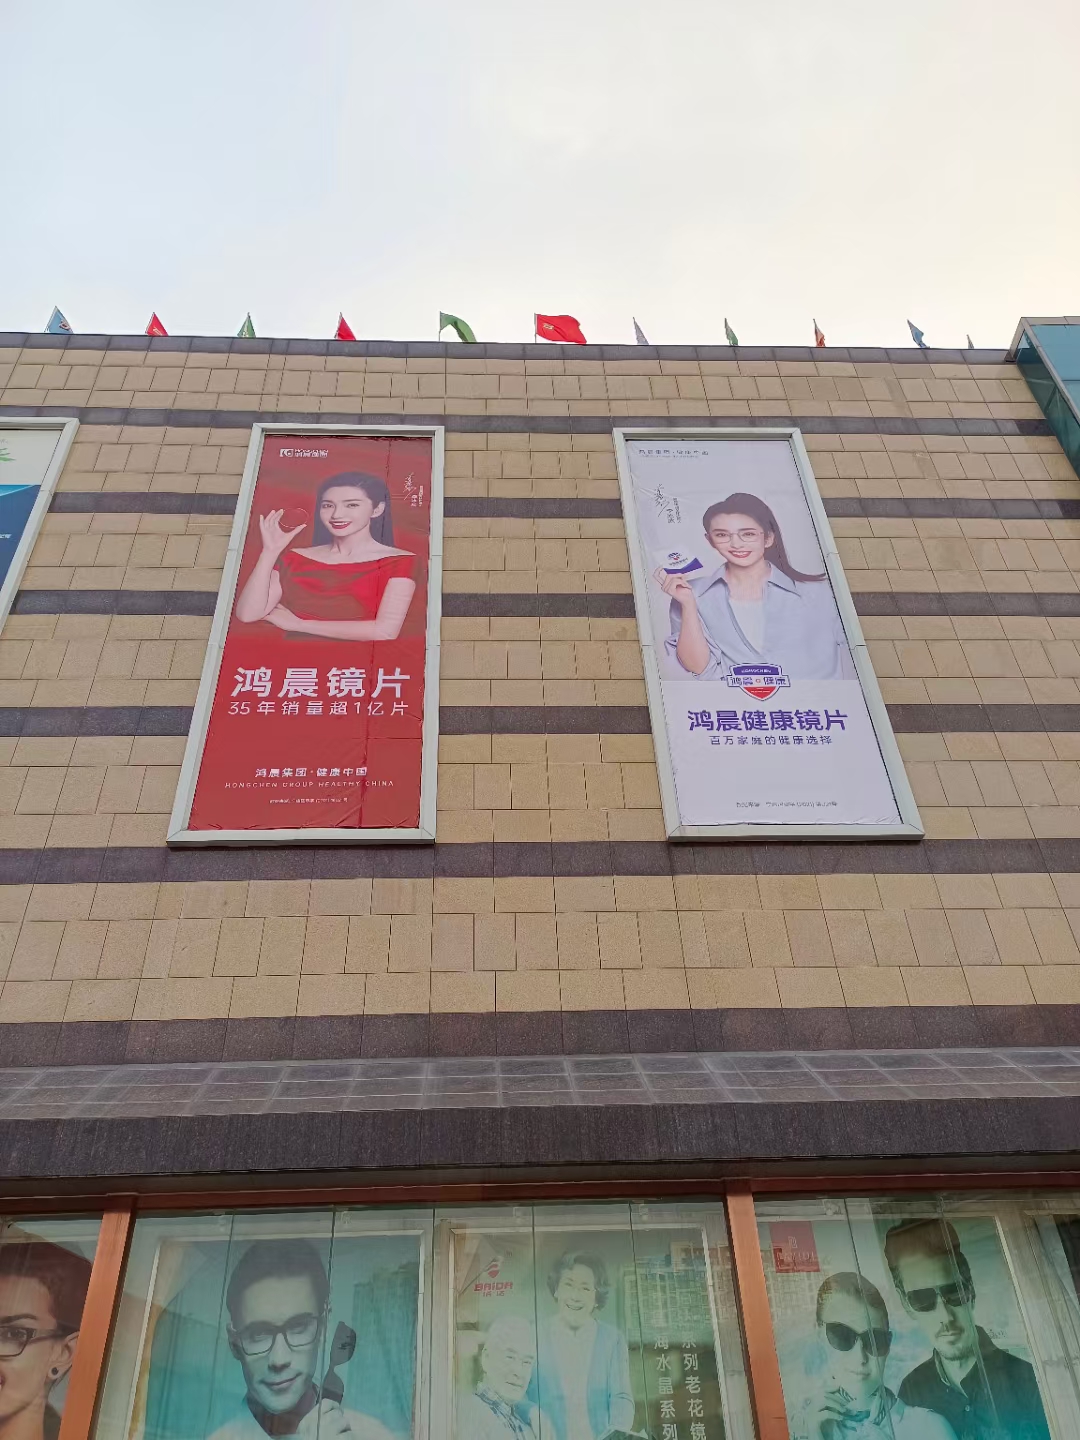 We komen er aan!Nieuwe advertentie op de optische markt van de stad Zhengzhou